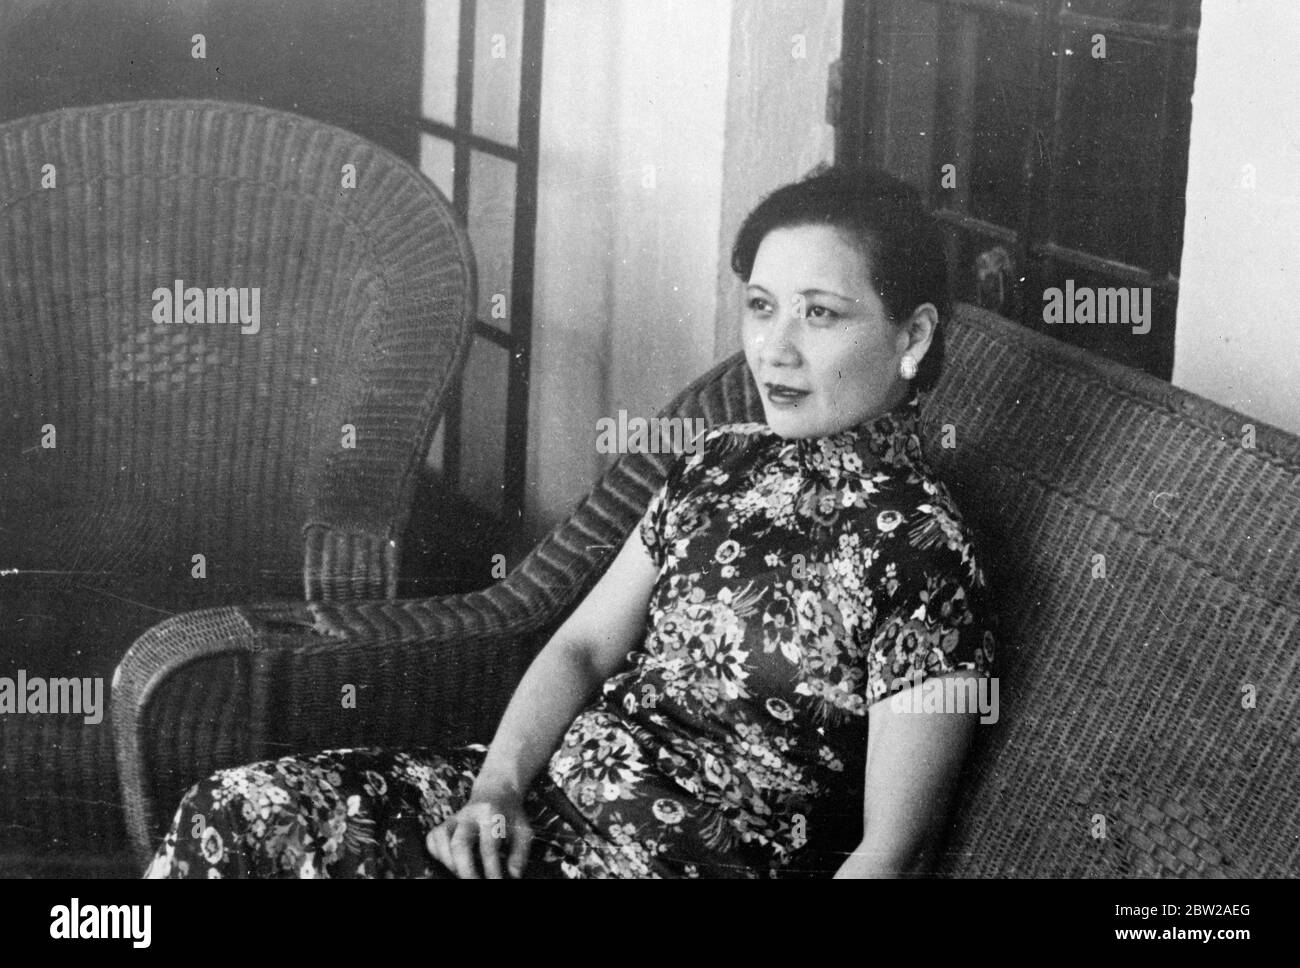 Mme Chiang Kai Shek blessé dans une voiture qui a fait des emmashes. Madame Chiang Kai Shek, épouse et chef Lt du général chinois, a brisé une côte lorsque sa voiture a renversé lors du voyage de Nanking, la capitale chinoise, à Shanghai. 29 octobre 1937 Banque D'Images